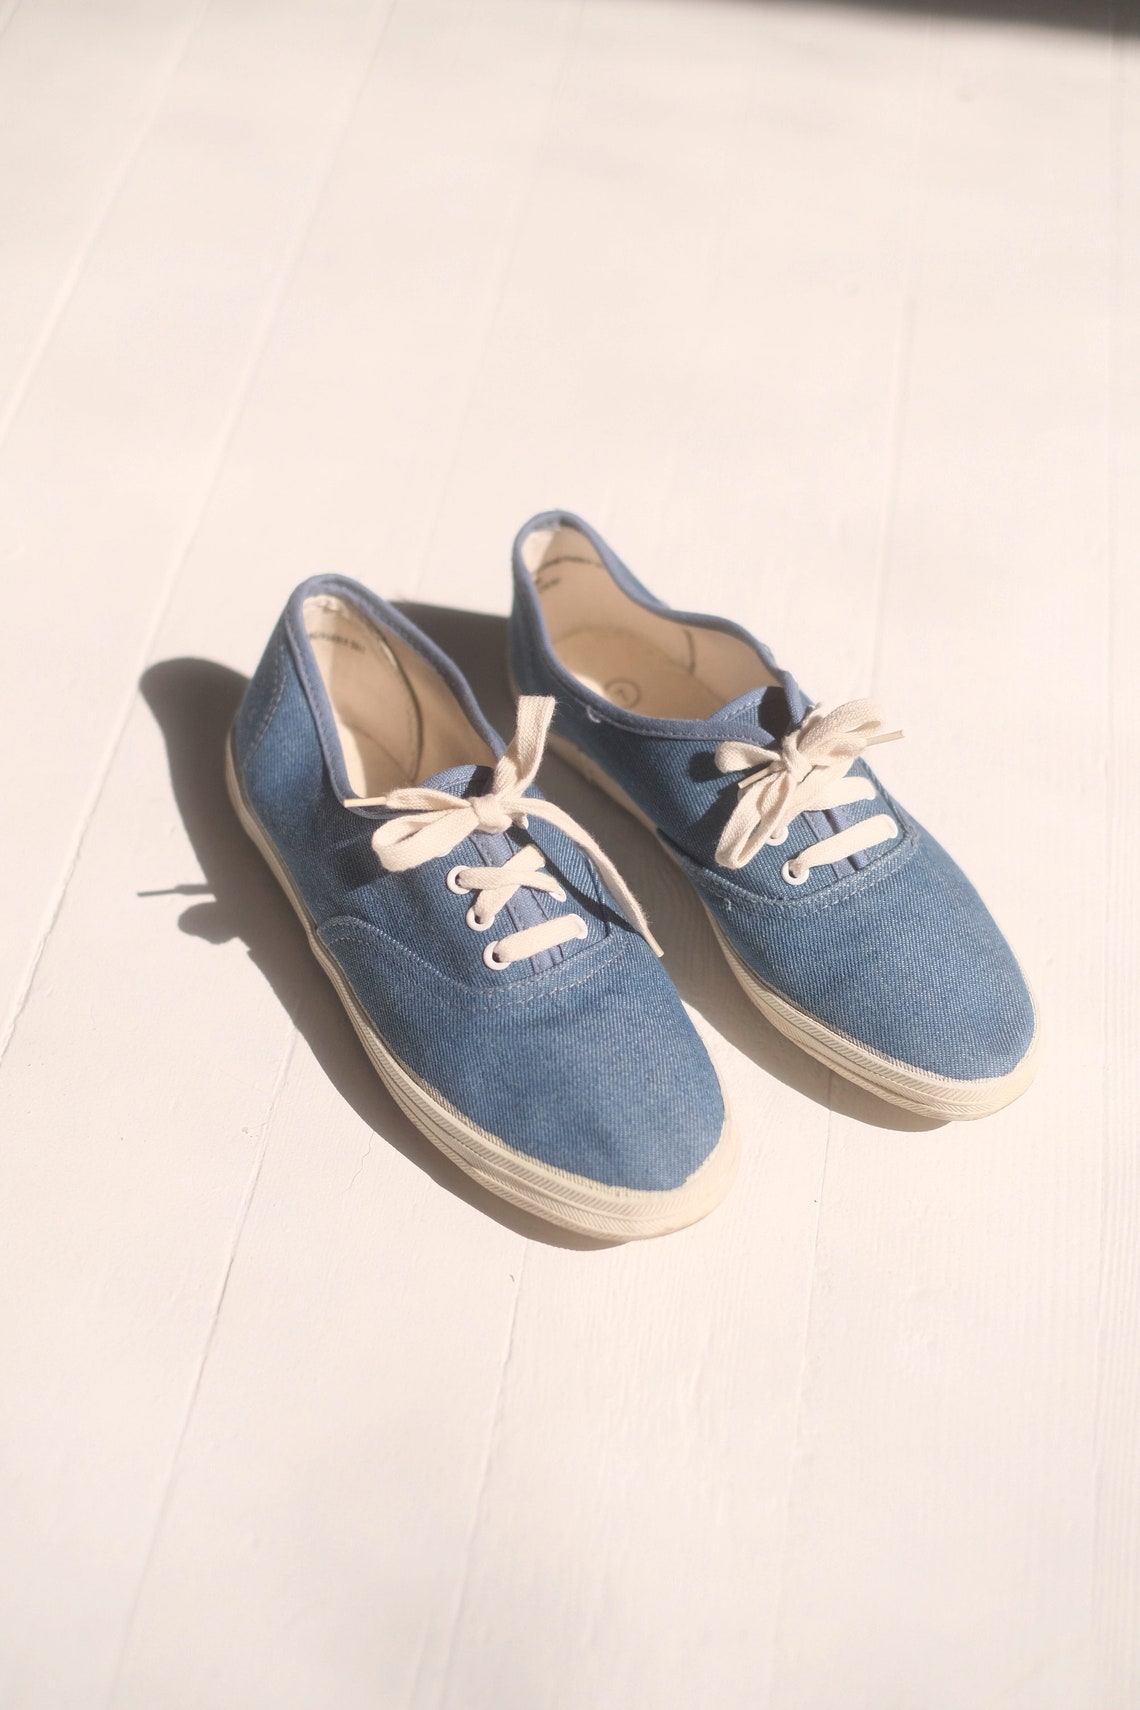 Denim Tennis Shoes Sz 7 // Vintage Jean Basic Cotton Lace Up | Etsy